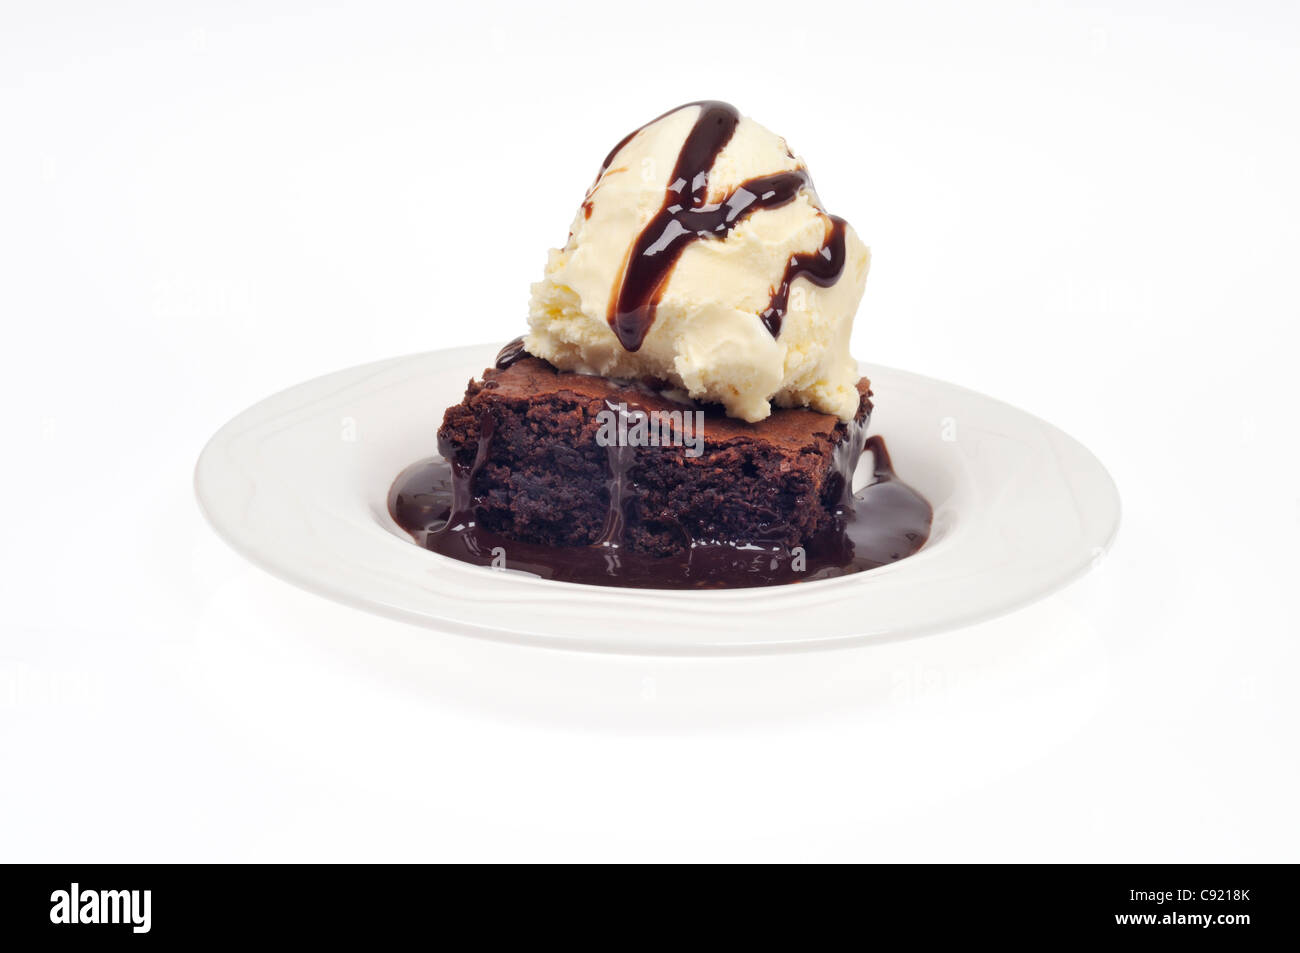 Fudge brownie au chocolat avec glace vanille et un filet de sauce au chocolat sur fond blanc dentelle Banque D'Images